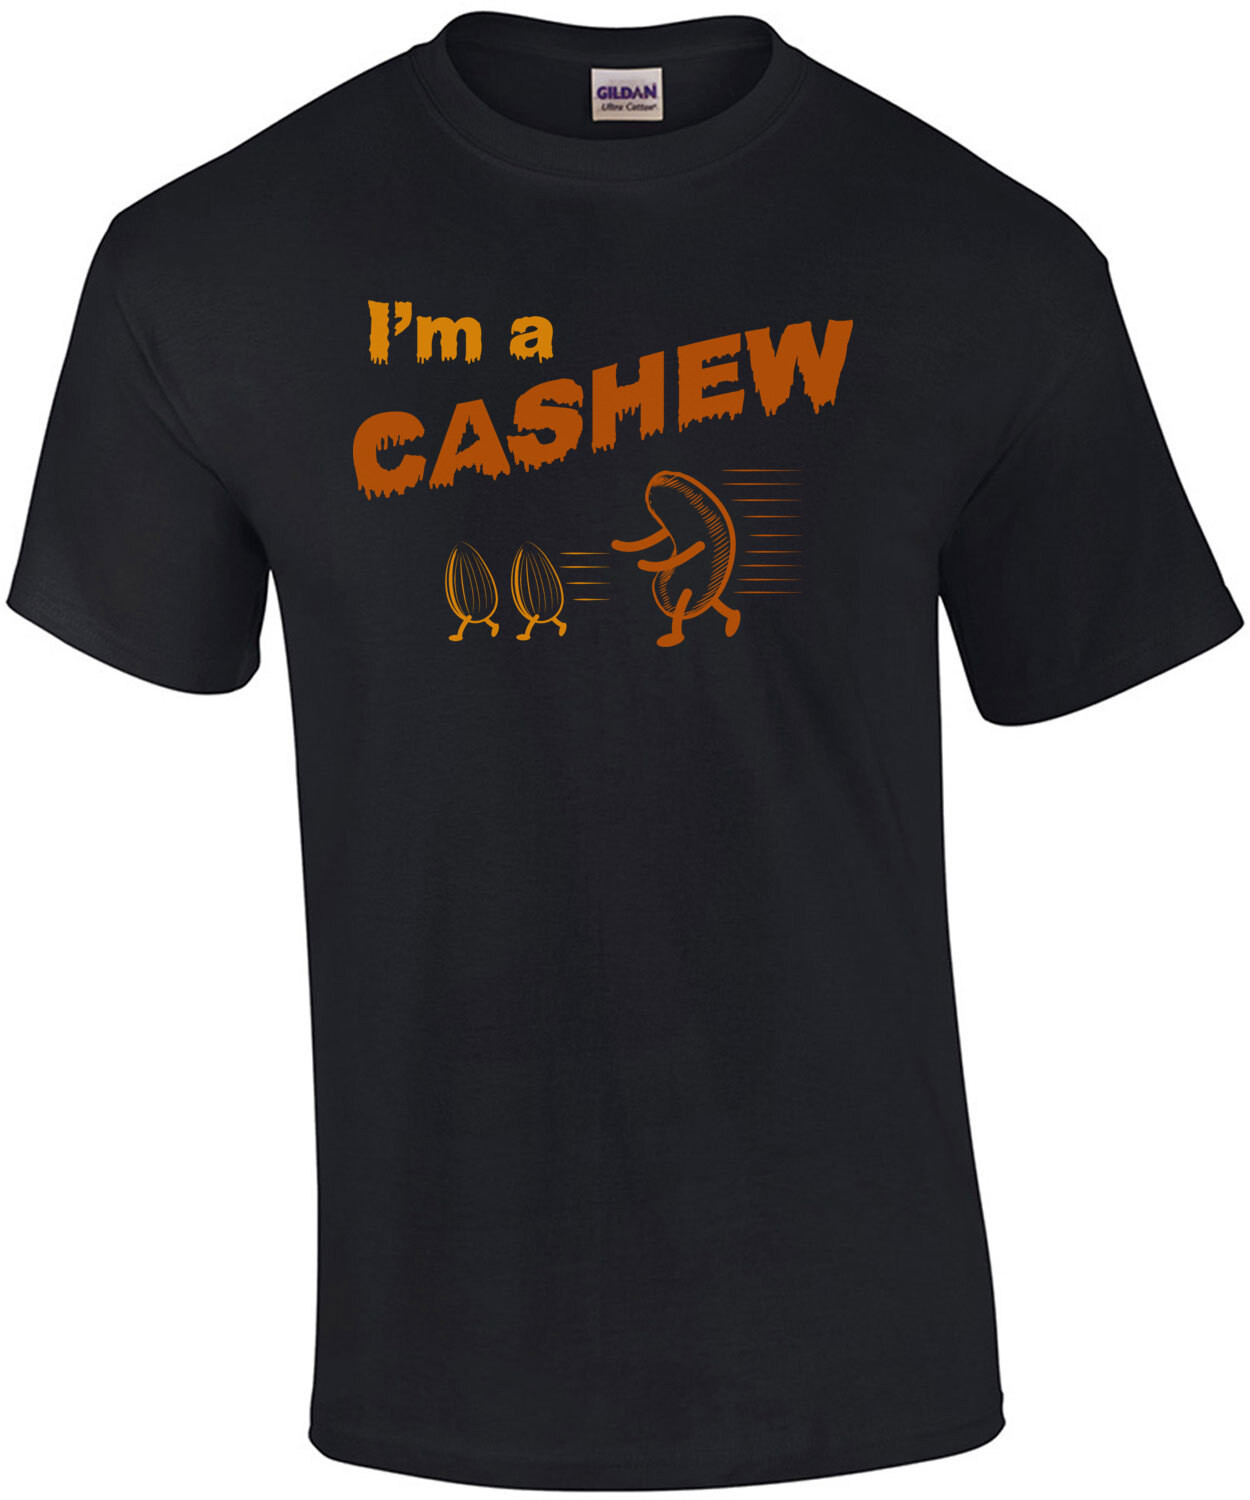 I'm a cashew - funny halloween pun t-shirt